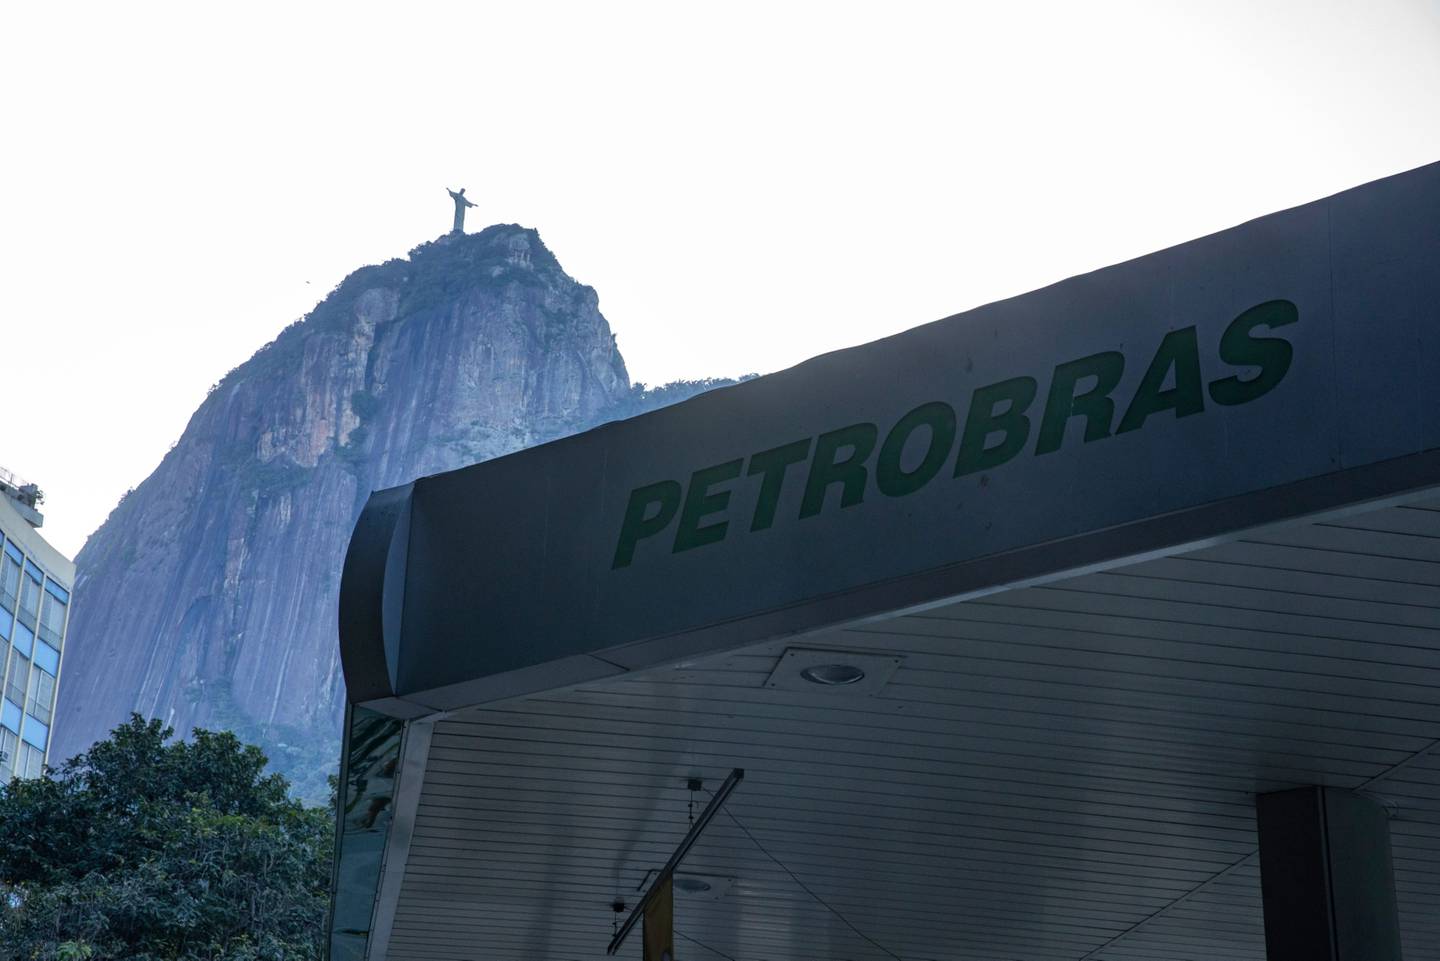 Petrobras anuncia os resultados do segundo trimestre de 2022 nesta quinta-feira (27) depois do fechamento do mercado